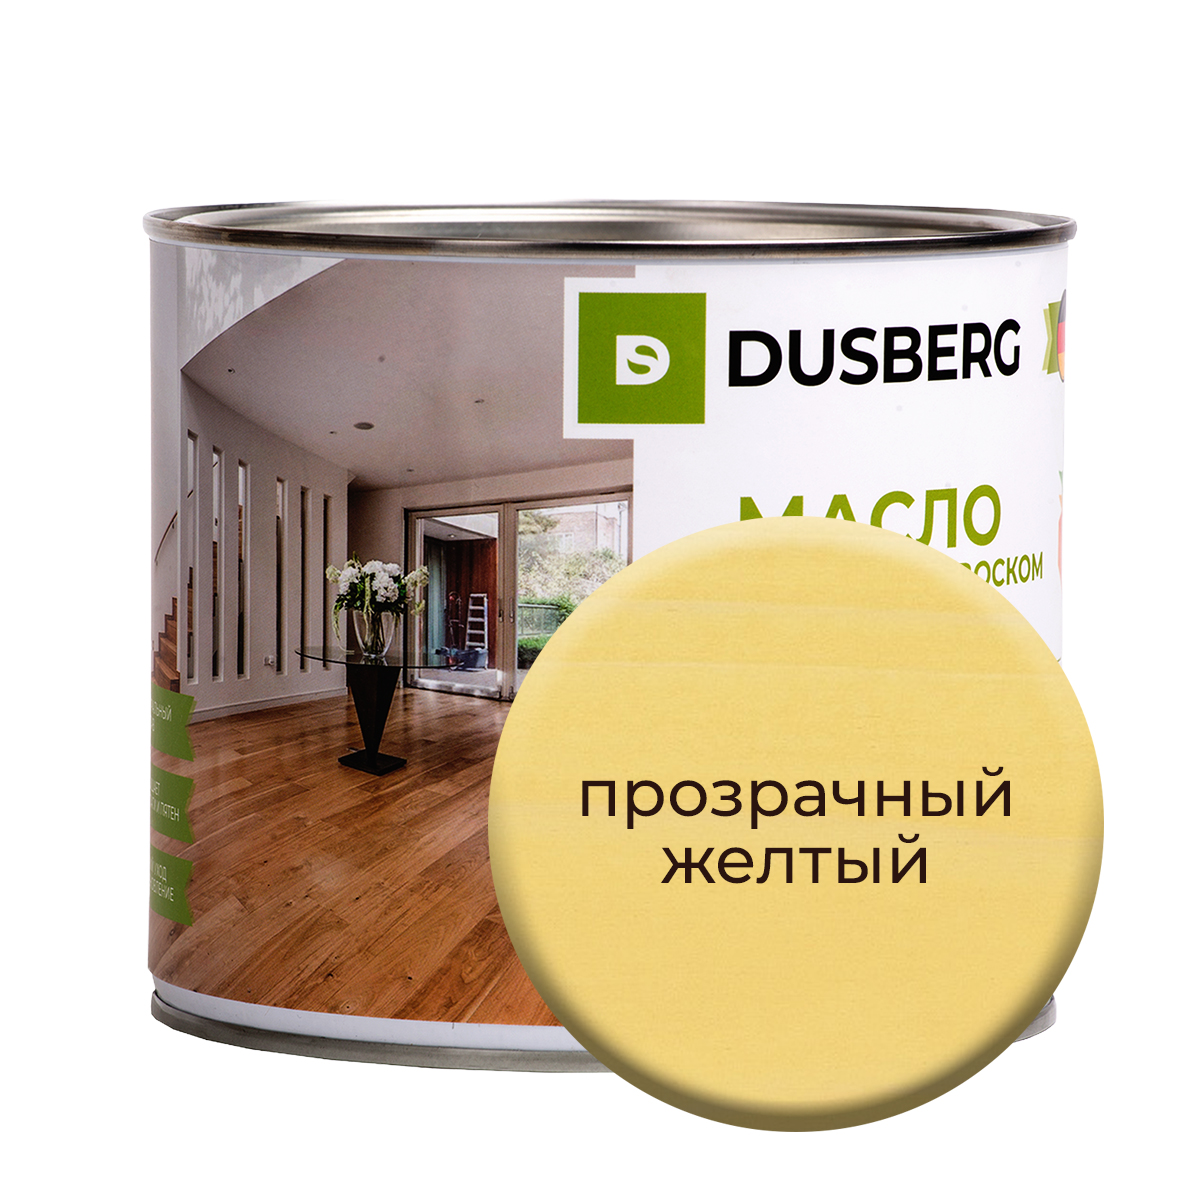 Масло Dusberg с твердым воском на бесцветной основе, 750 мл Прозрачный желтый масло воск для террасной доски brite flexx бес ное банка 0 75 л 212475